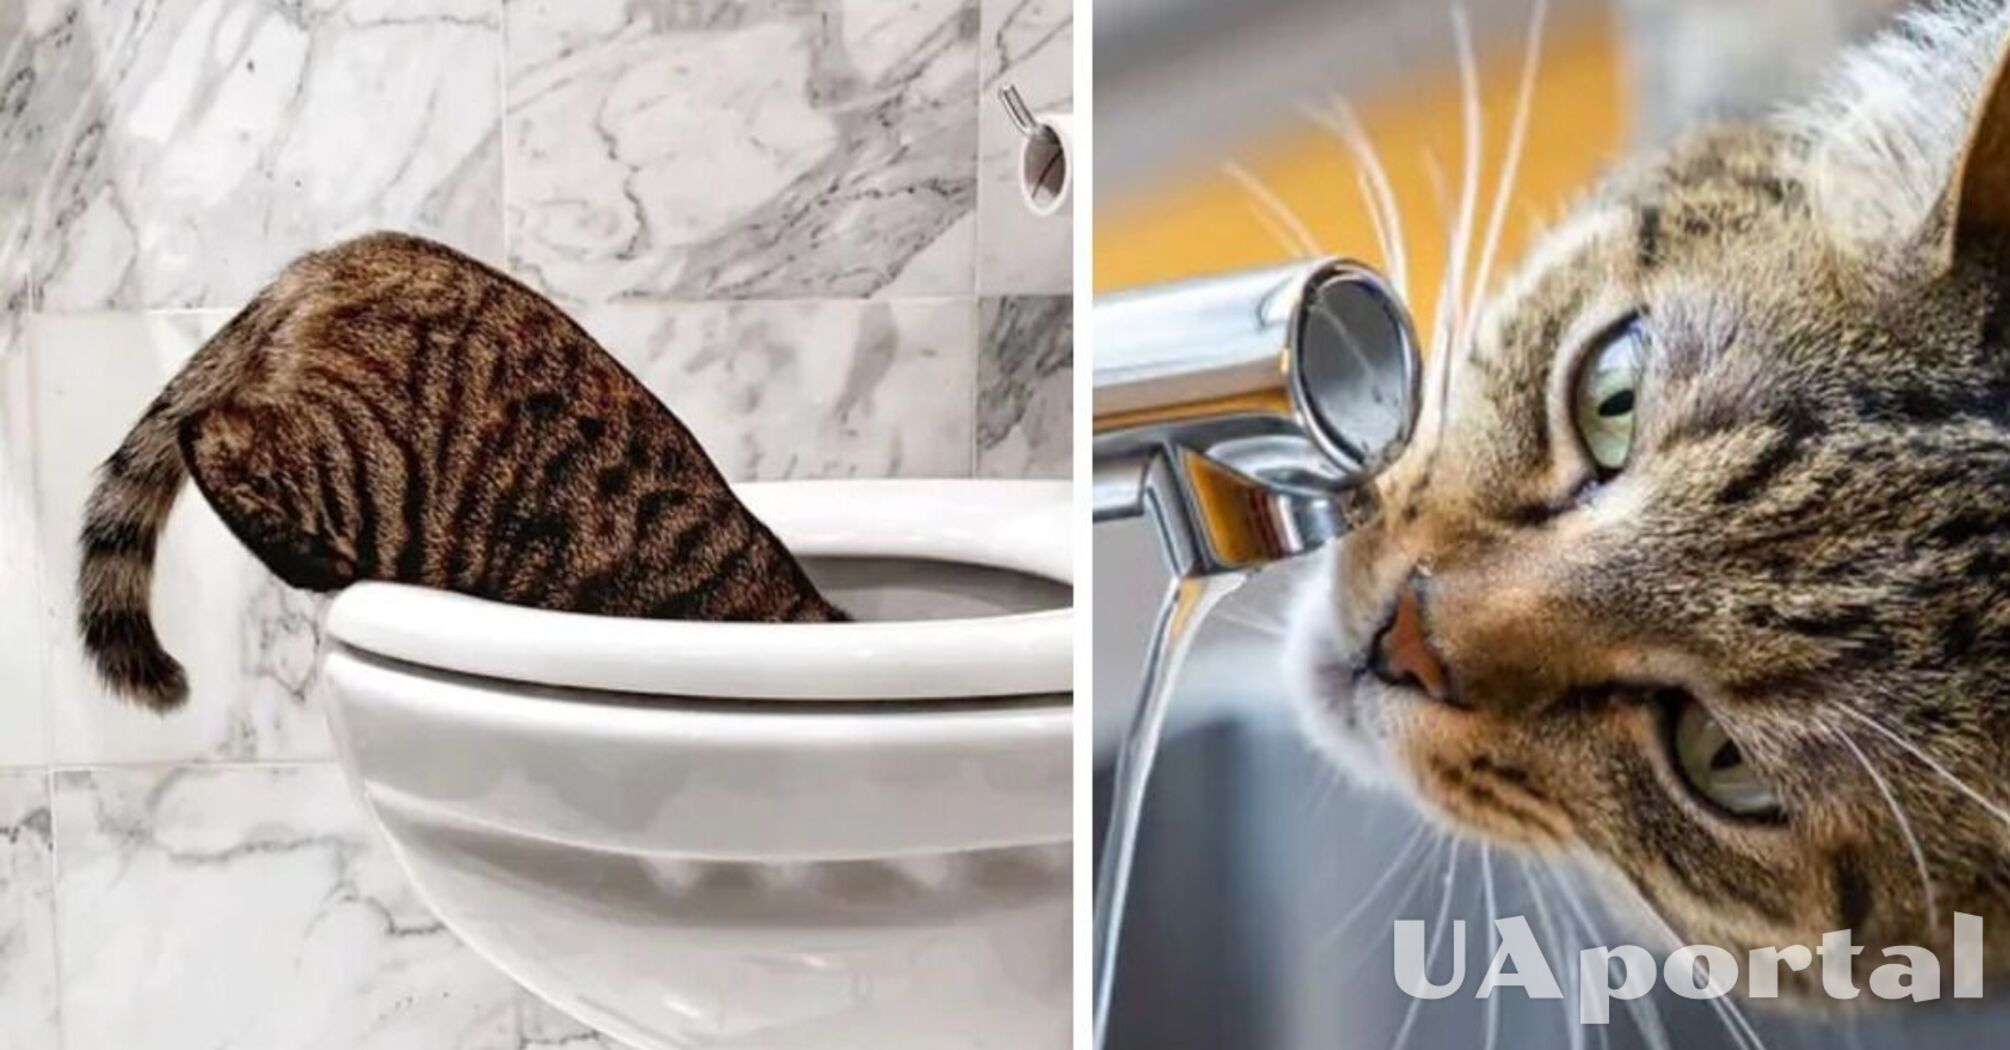 Специалисты объяснили, почему коты не брезгуют пить воду из унитаза, а воду из миски игнорируют